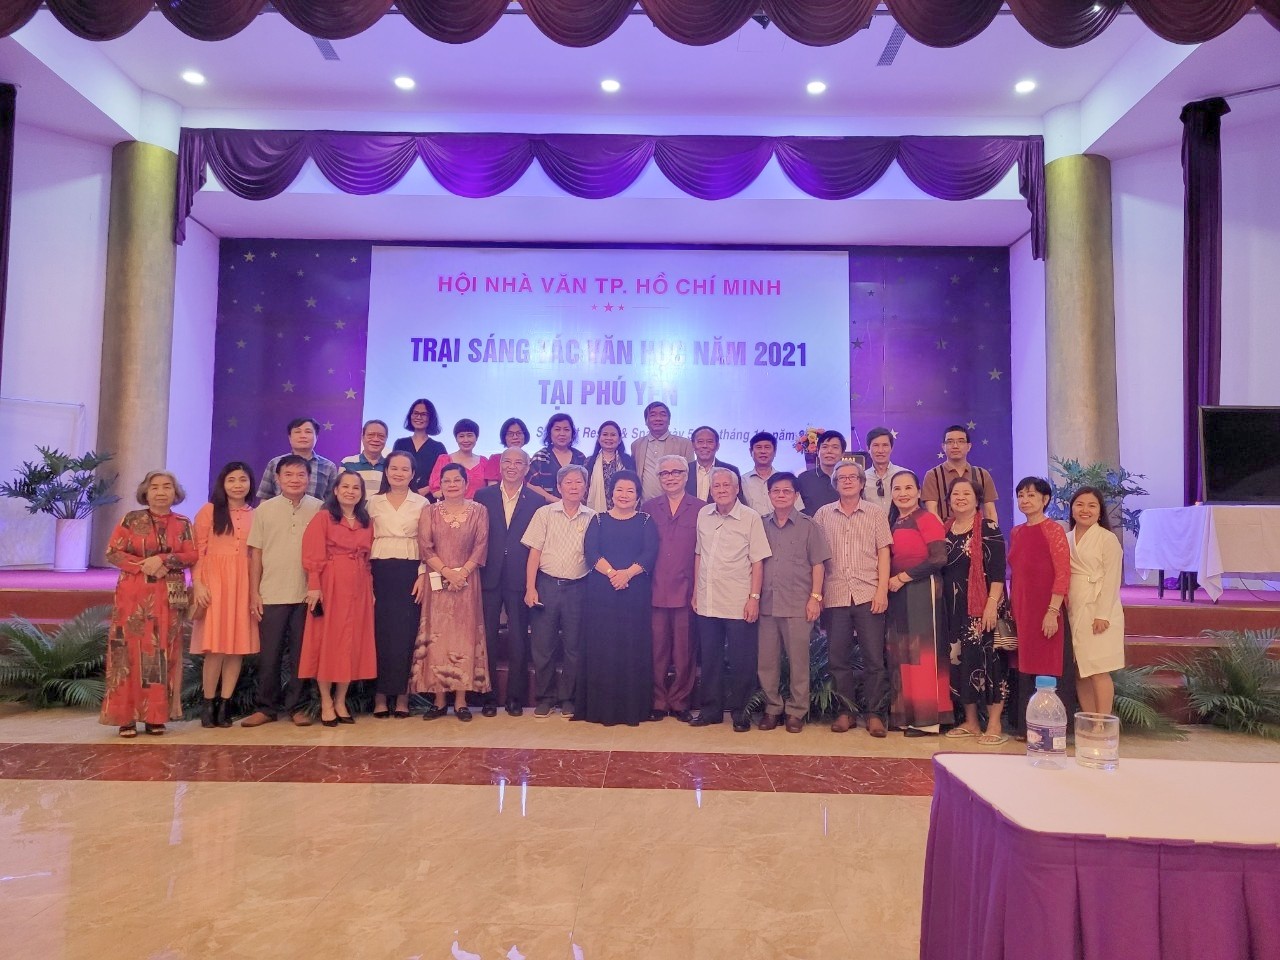 Đoàn nhà văn TPHCM tham dự lễ khai mạc trại sáng tác